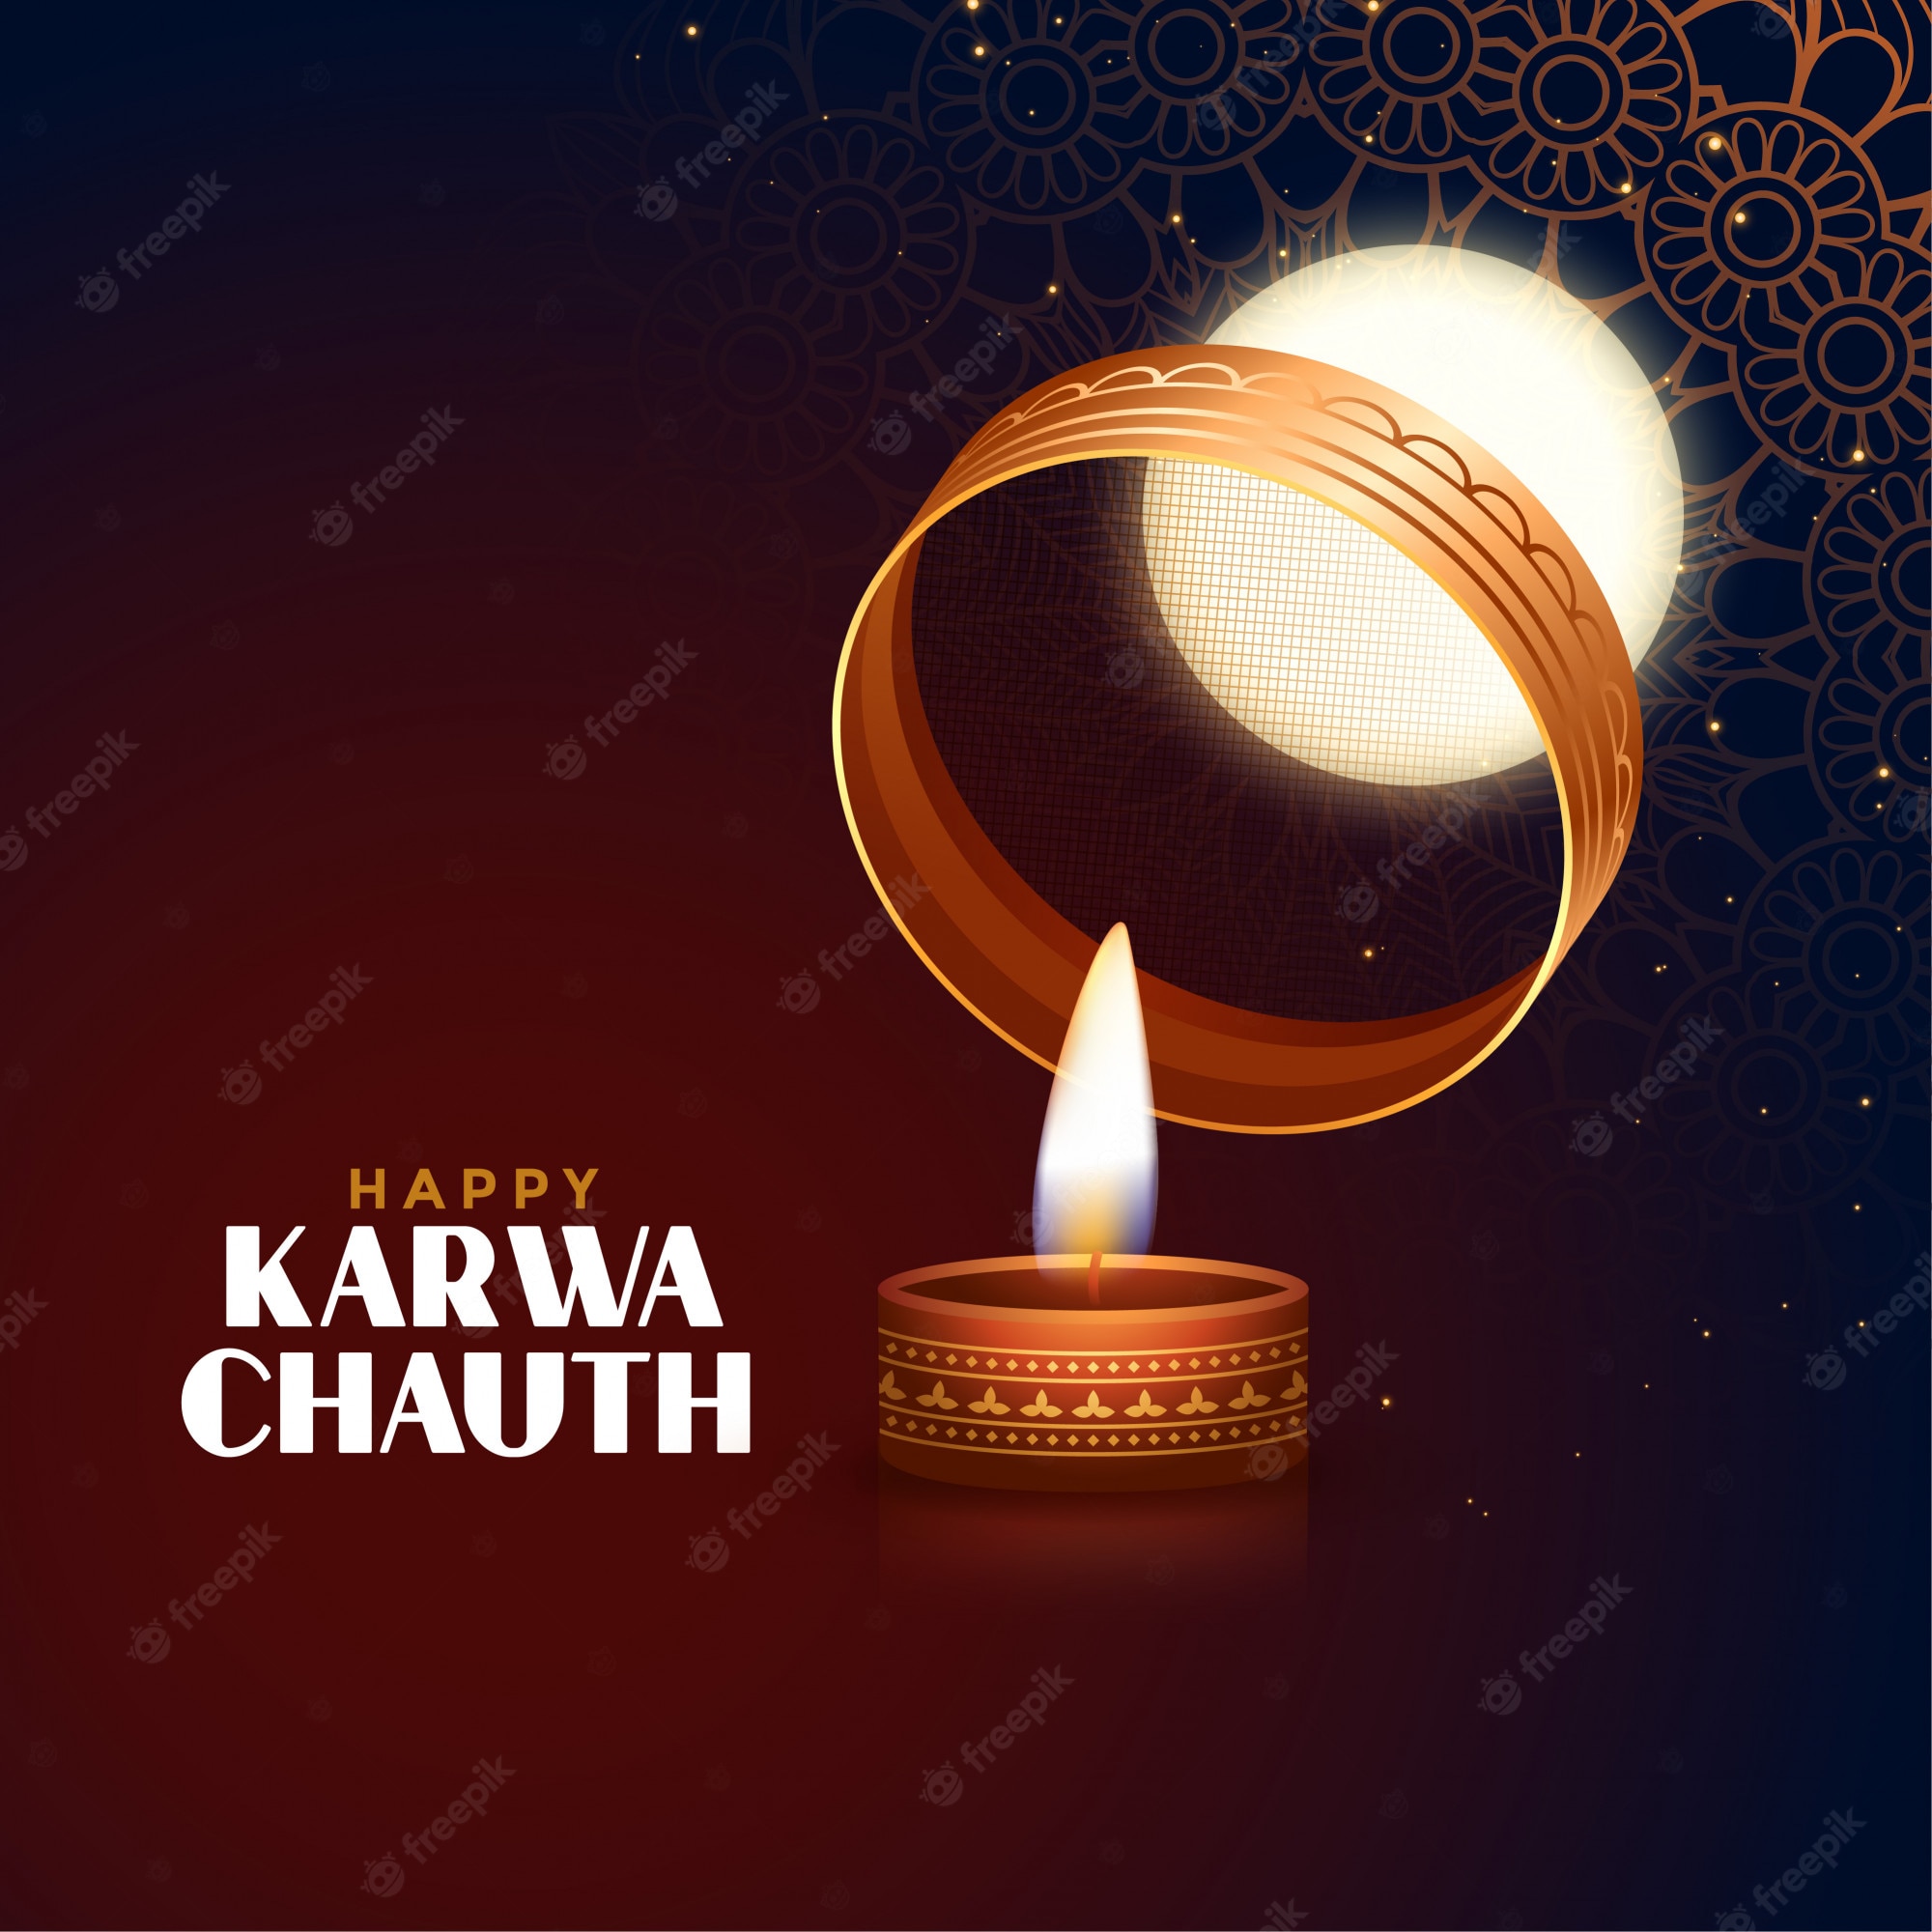 Karwa chauth images